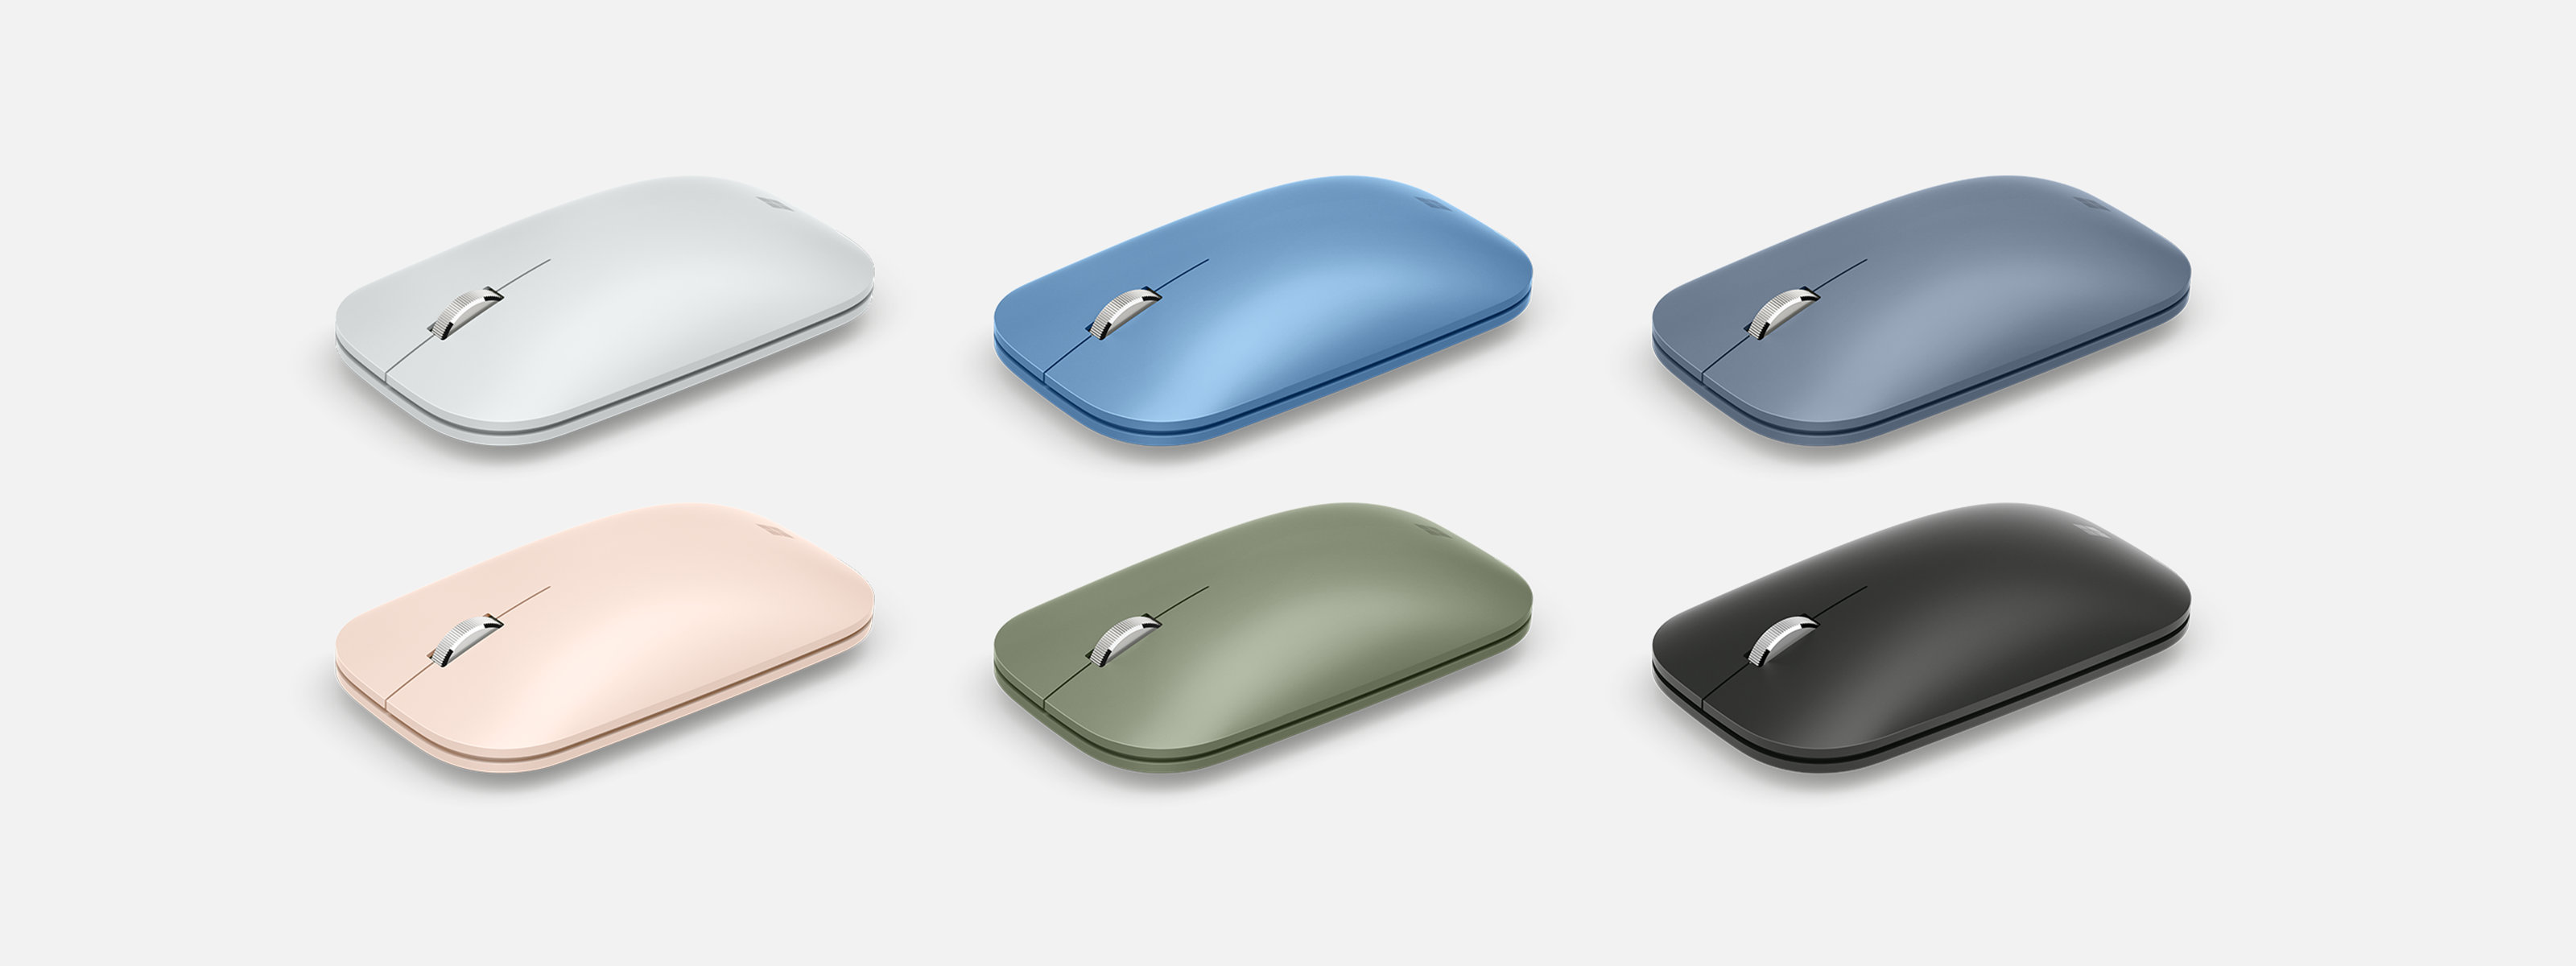 Souris Microsoft Modern Mobile Mouse dans différentes couleurs.